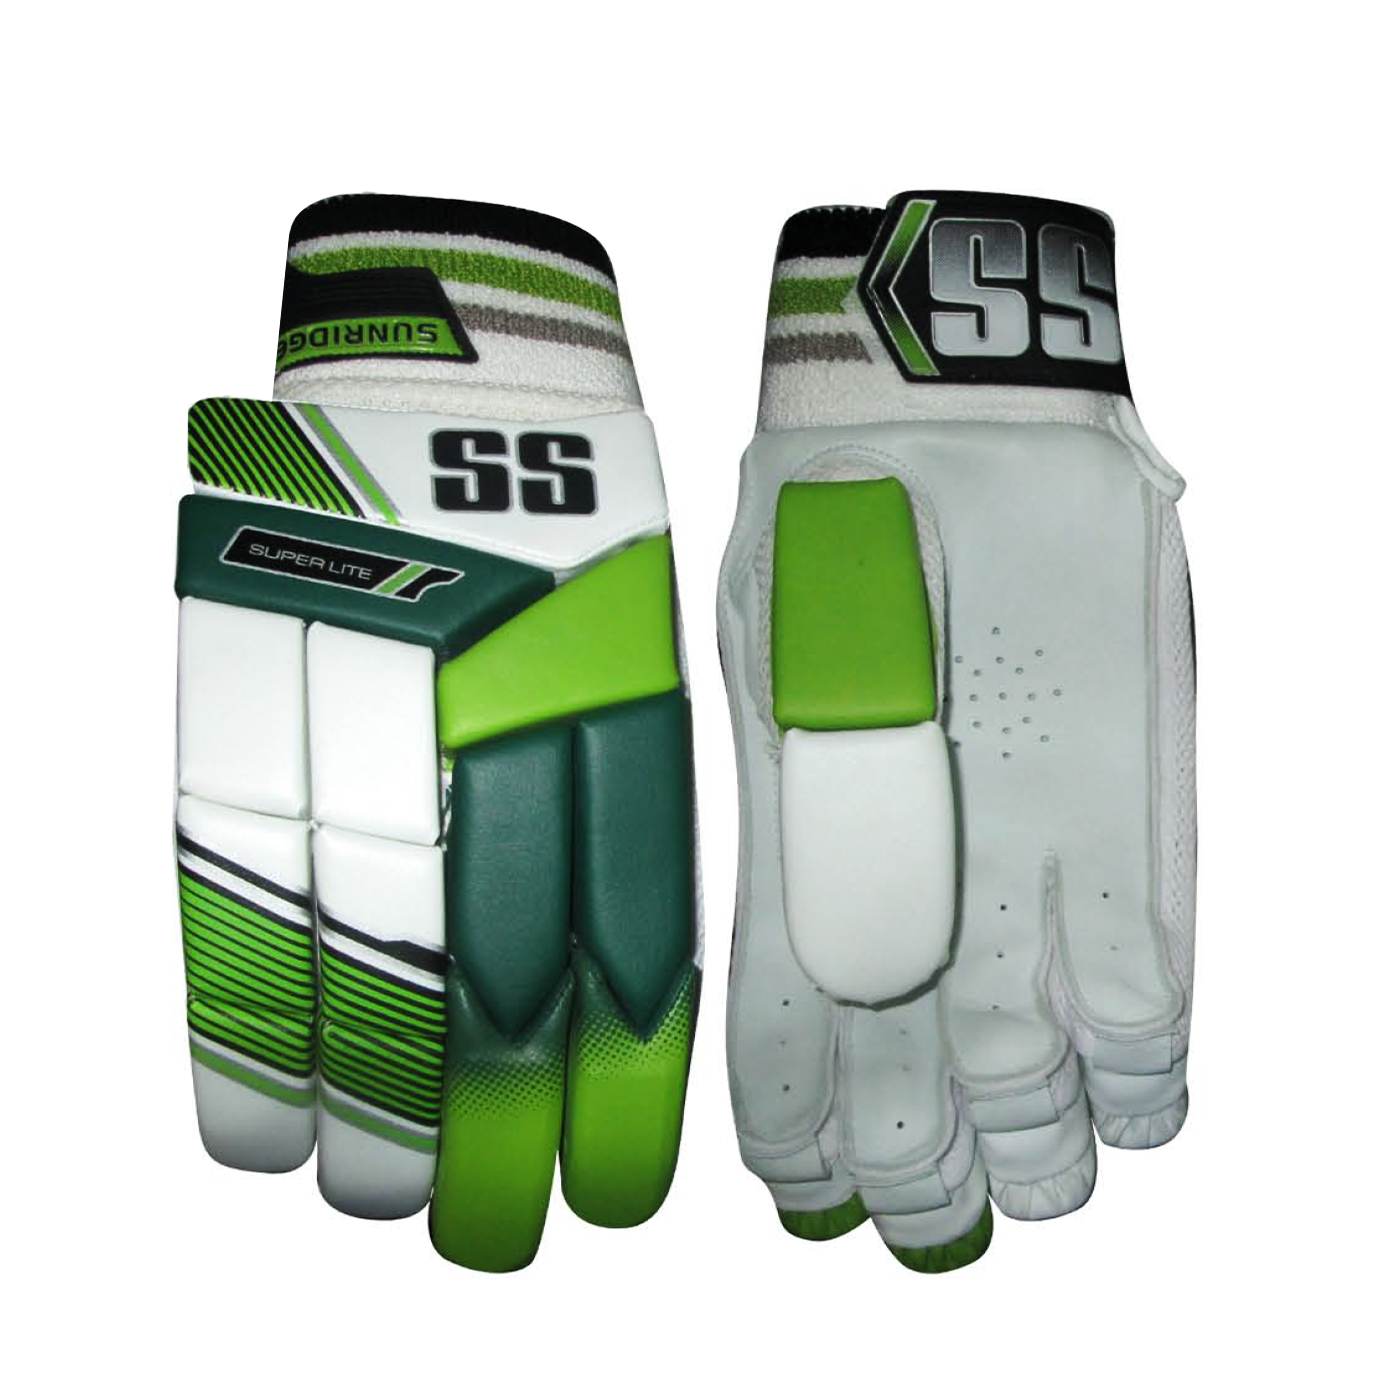 SS Super Lite Cricket Gloves 